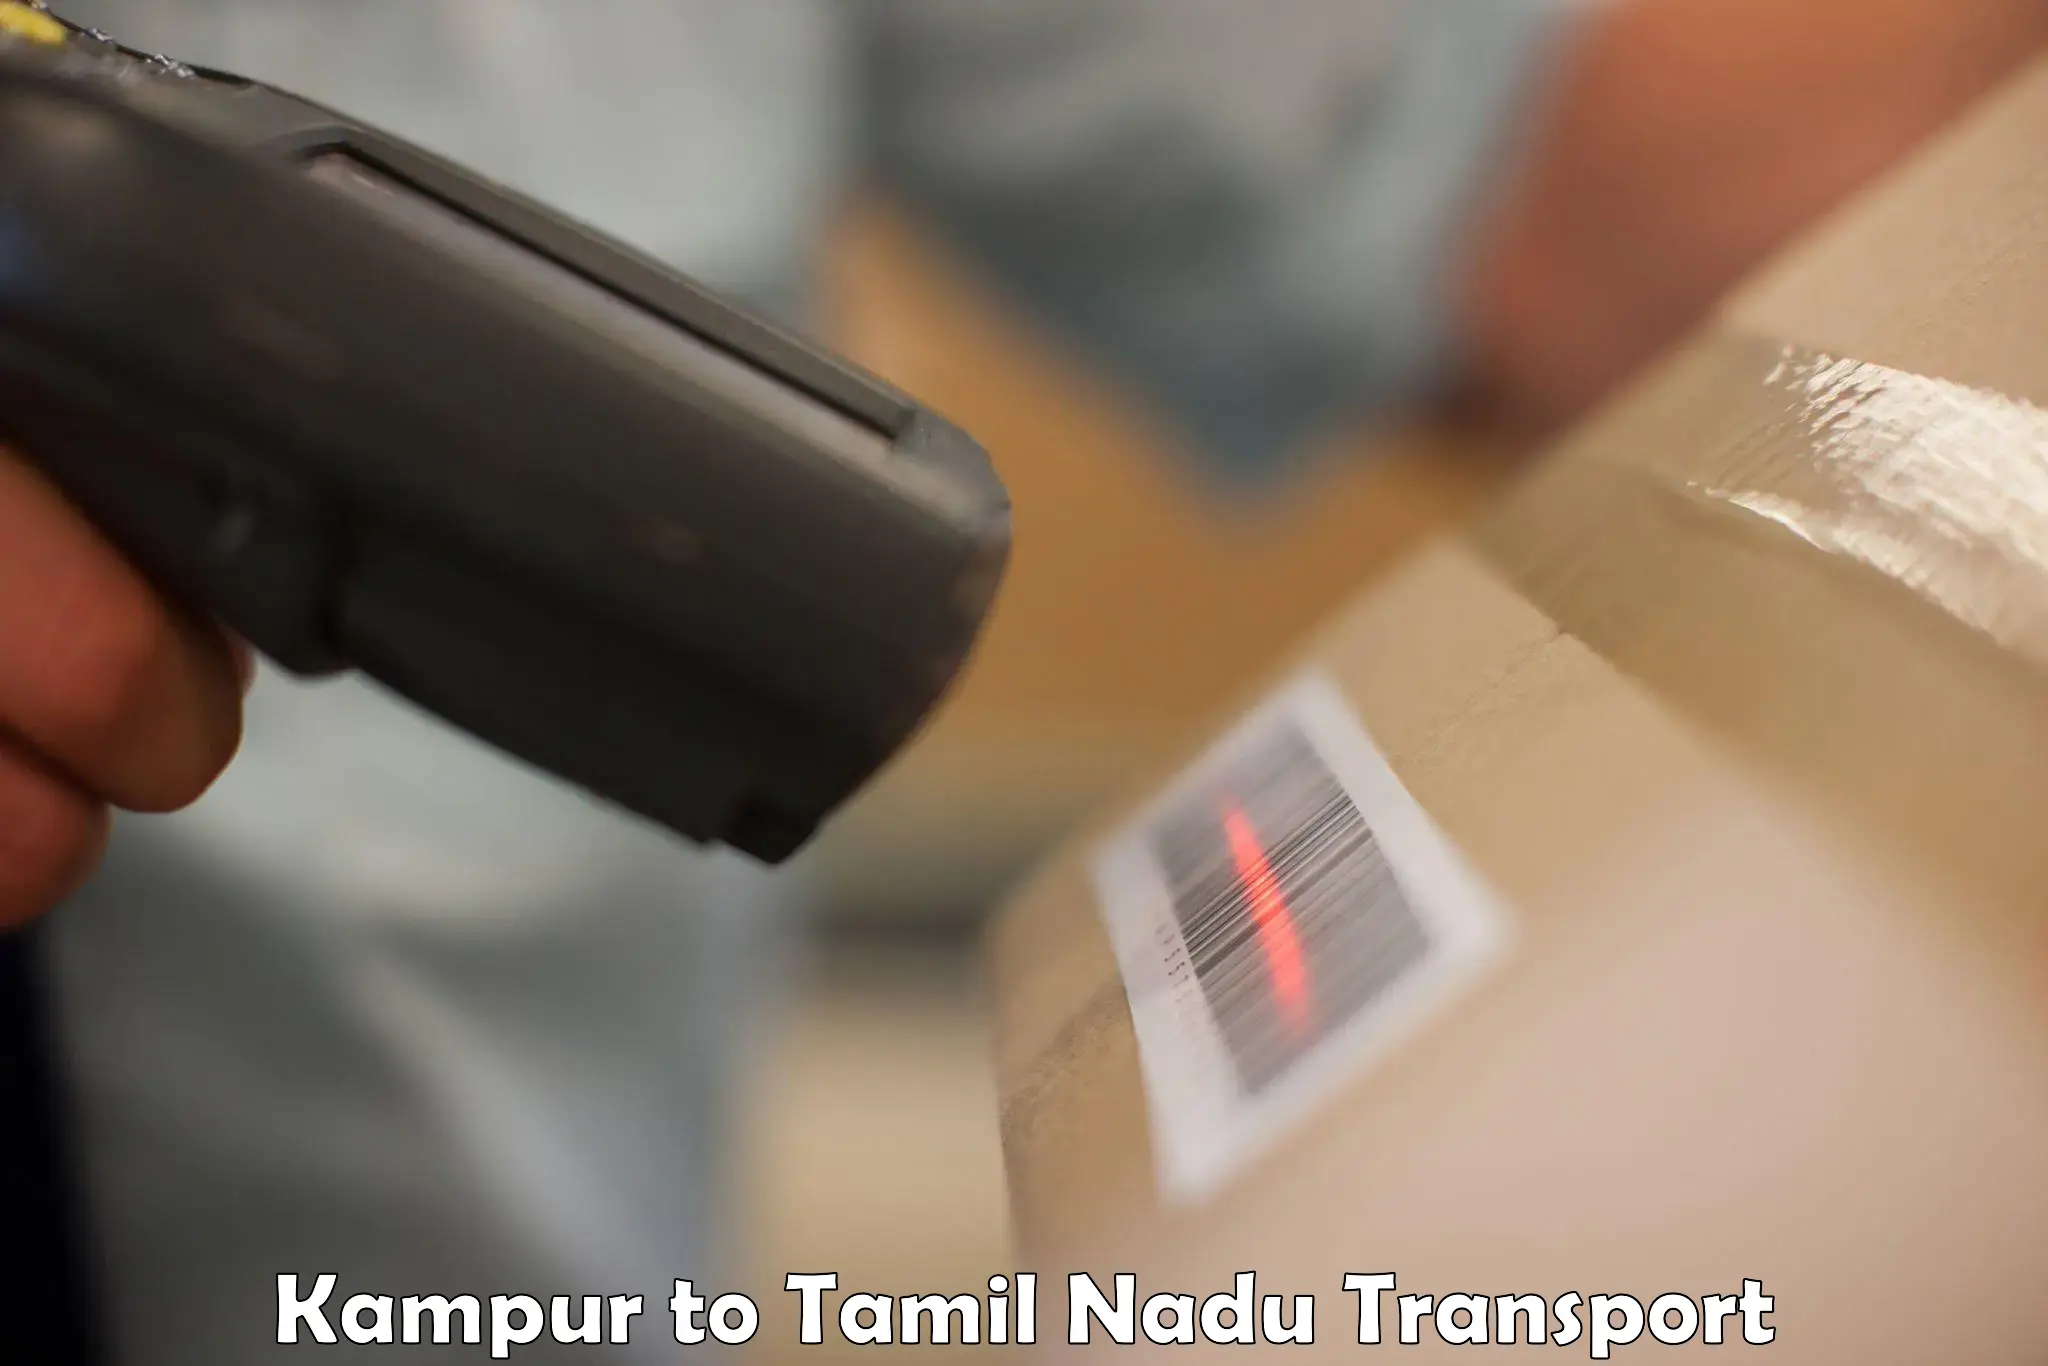 International cargo transportation services Kampur to Tirupattur